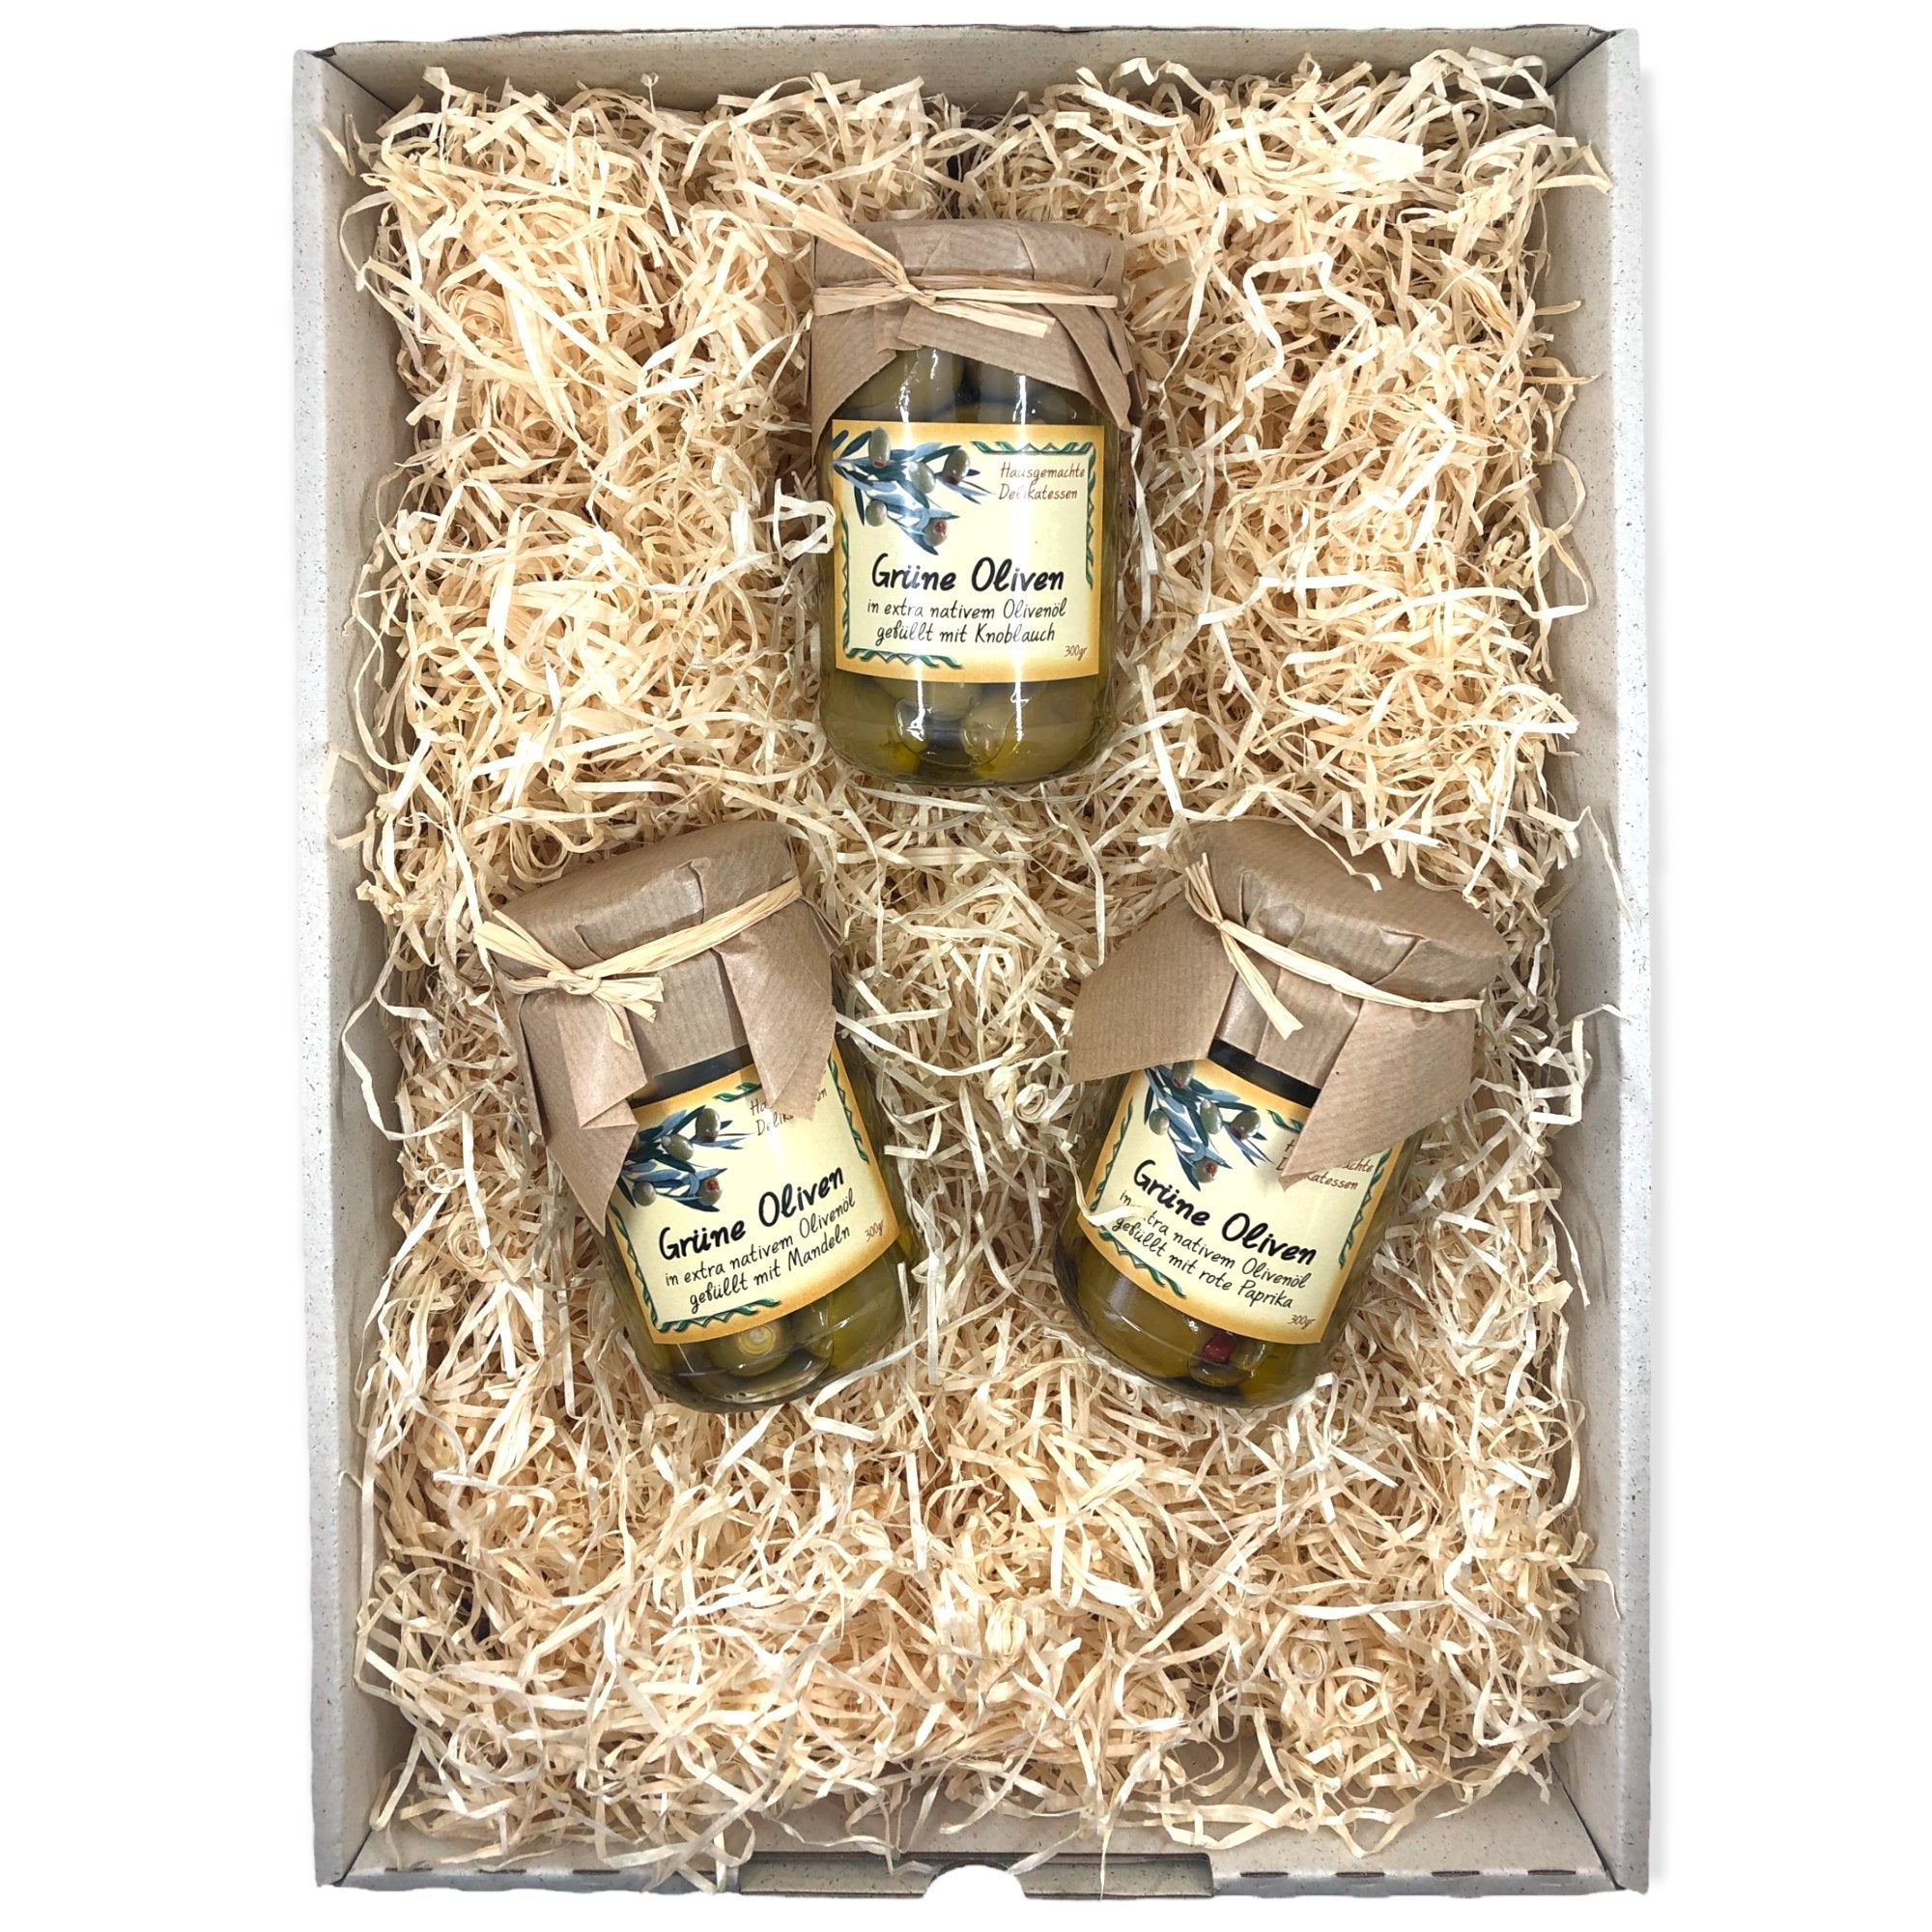 OlivenZauber Geschenkset “Gefüllte Oliven” - OlivenZauber - Olivenöl neu erleben